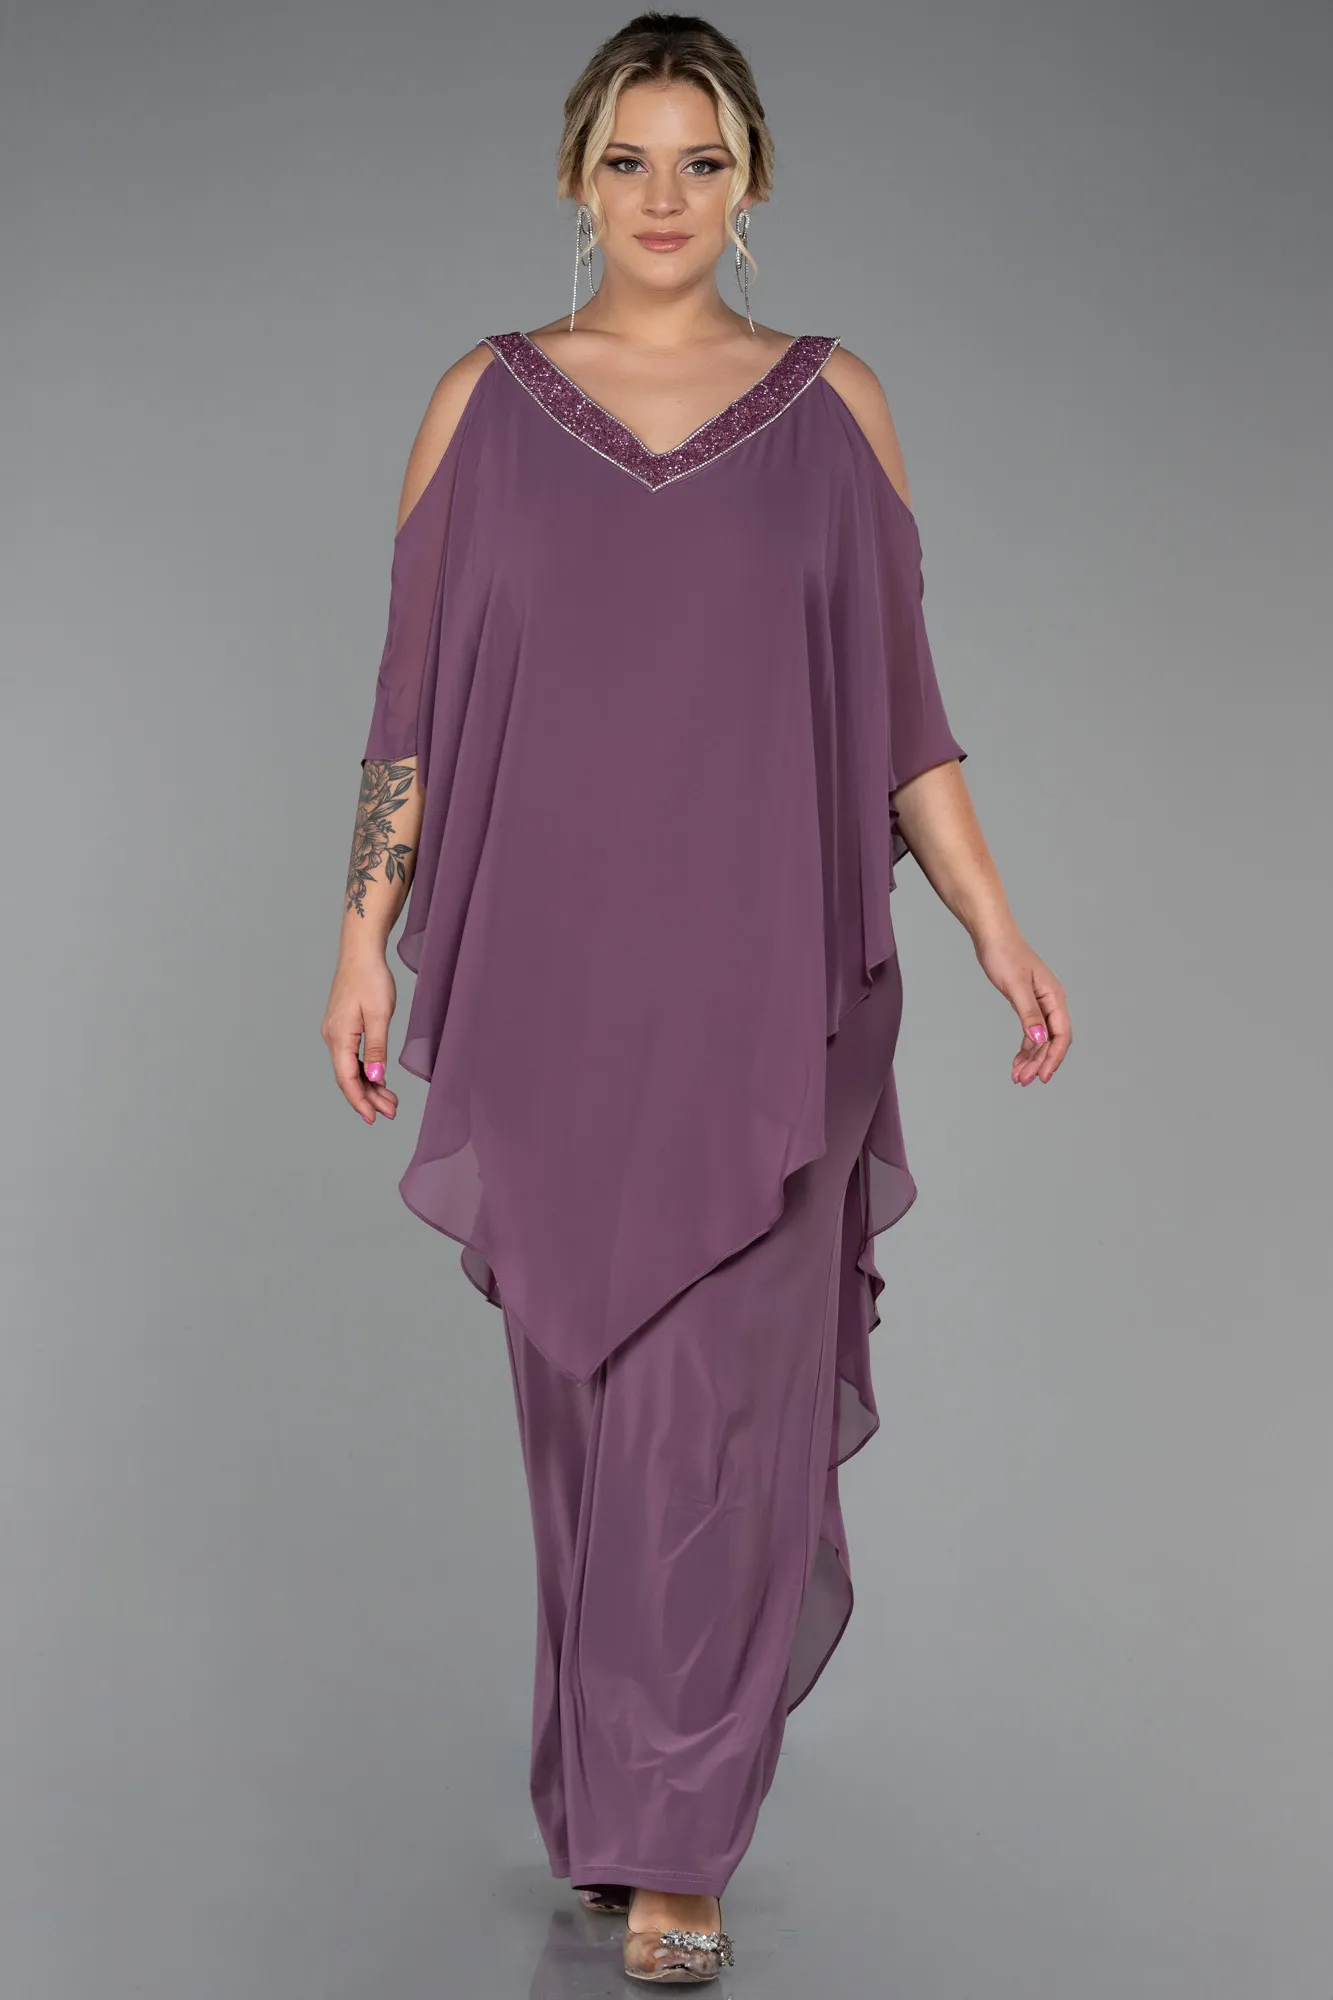 Lavender-Chiffon Plus Size Evening Dress ABT096